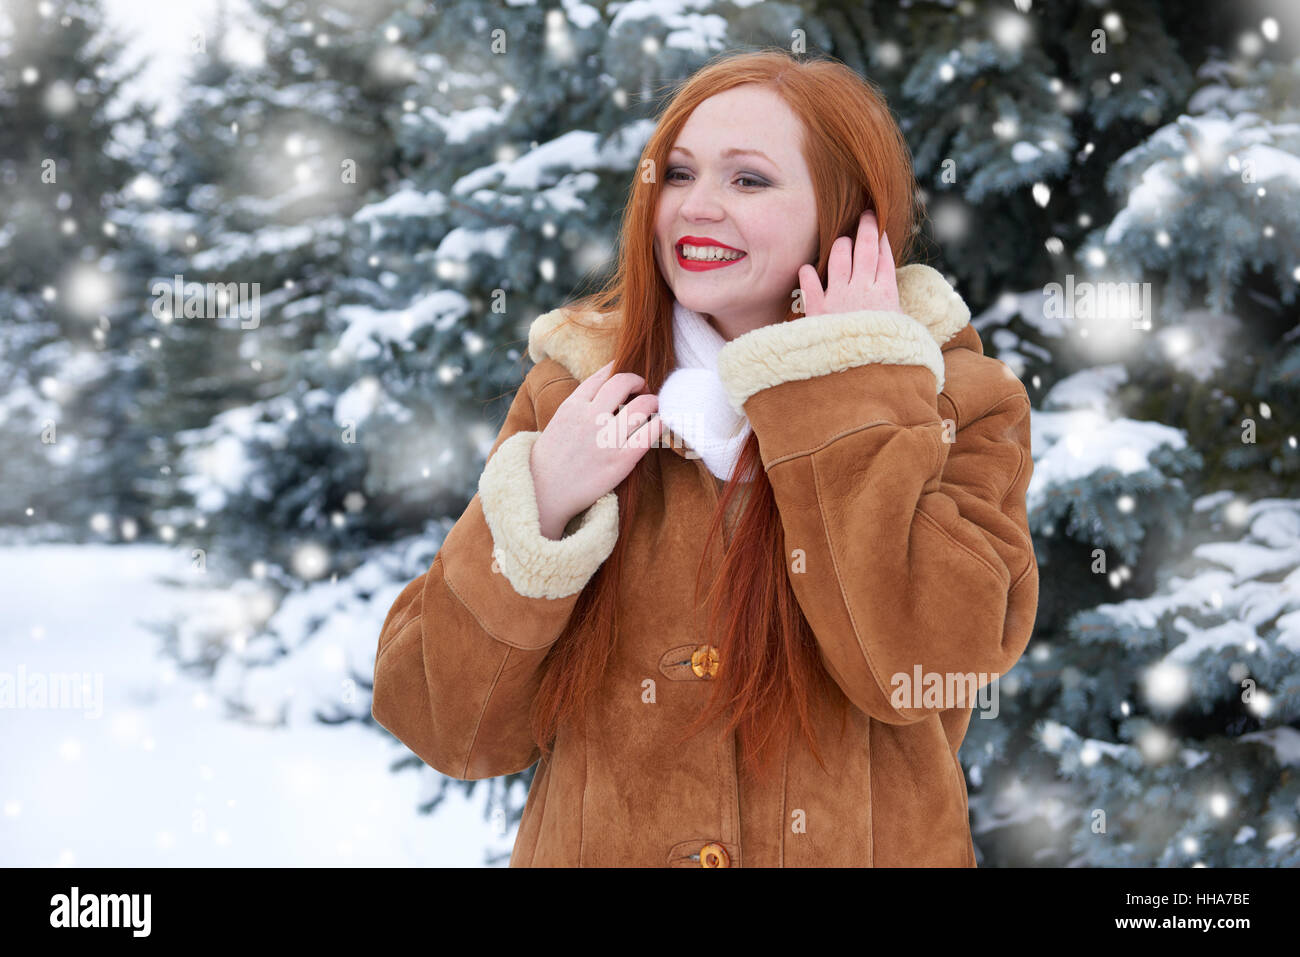 Belle femme pour profiter de l'hiver, la neige sur les sapins en forêt, longs cheveux rouges, portant un manteau en peau de mouton Banque D'Images